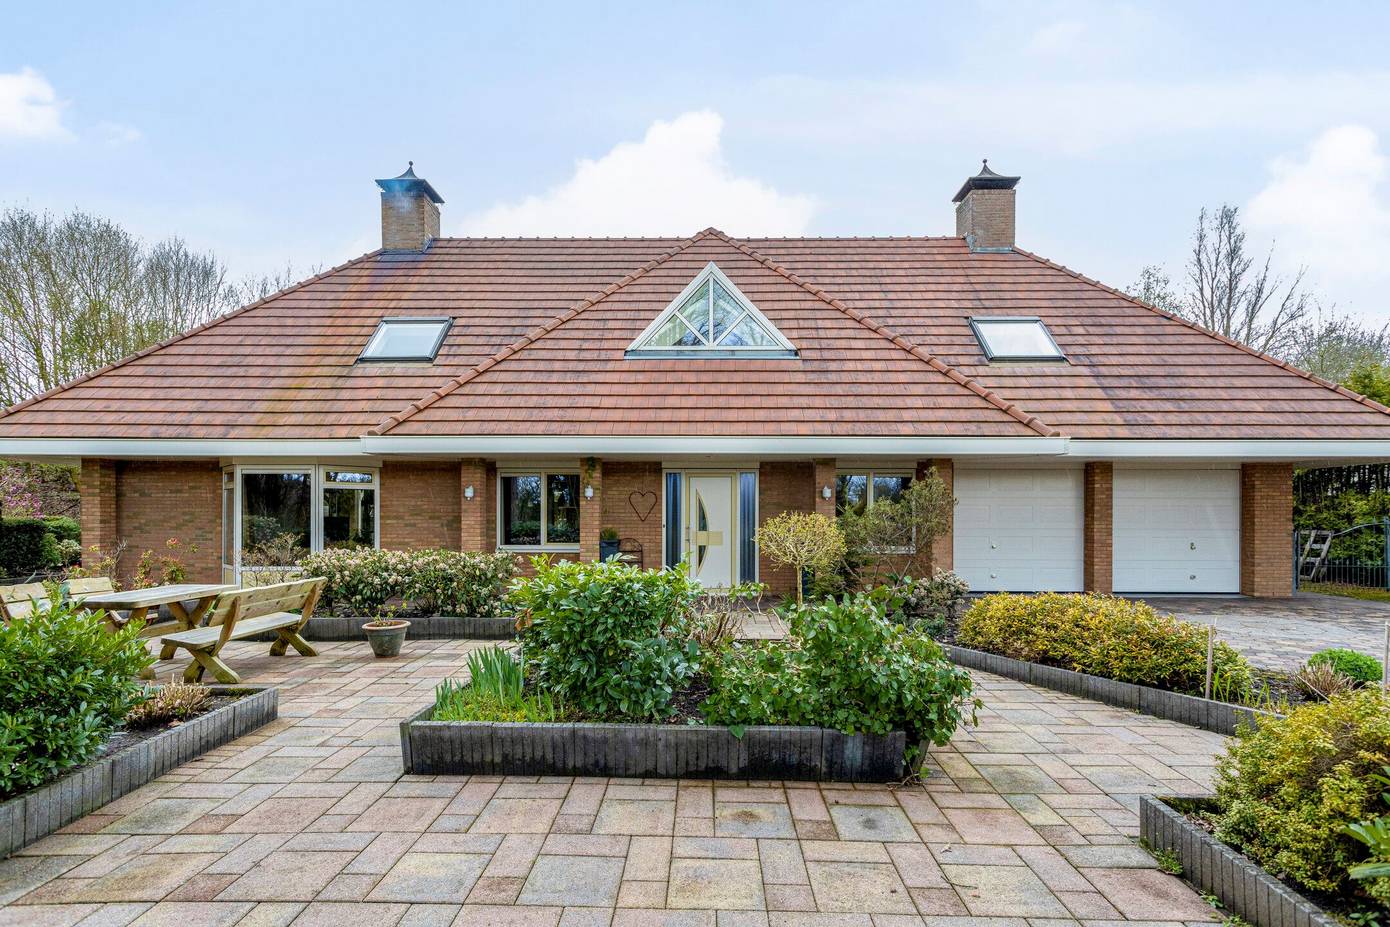 Te koop in Drenthe: vrijstaande ruime villa met ruime tuin